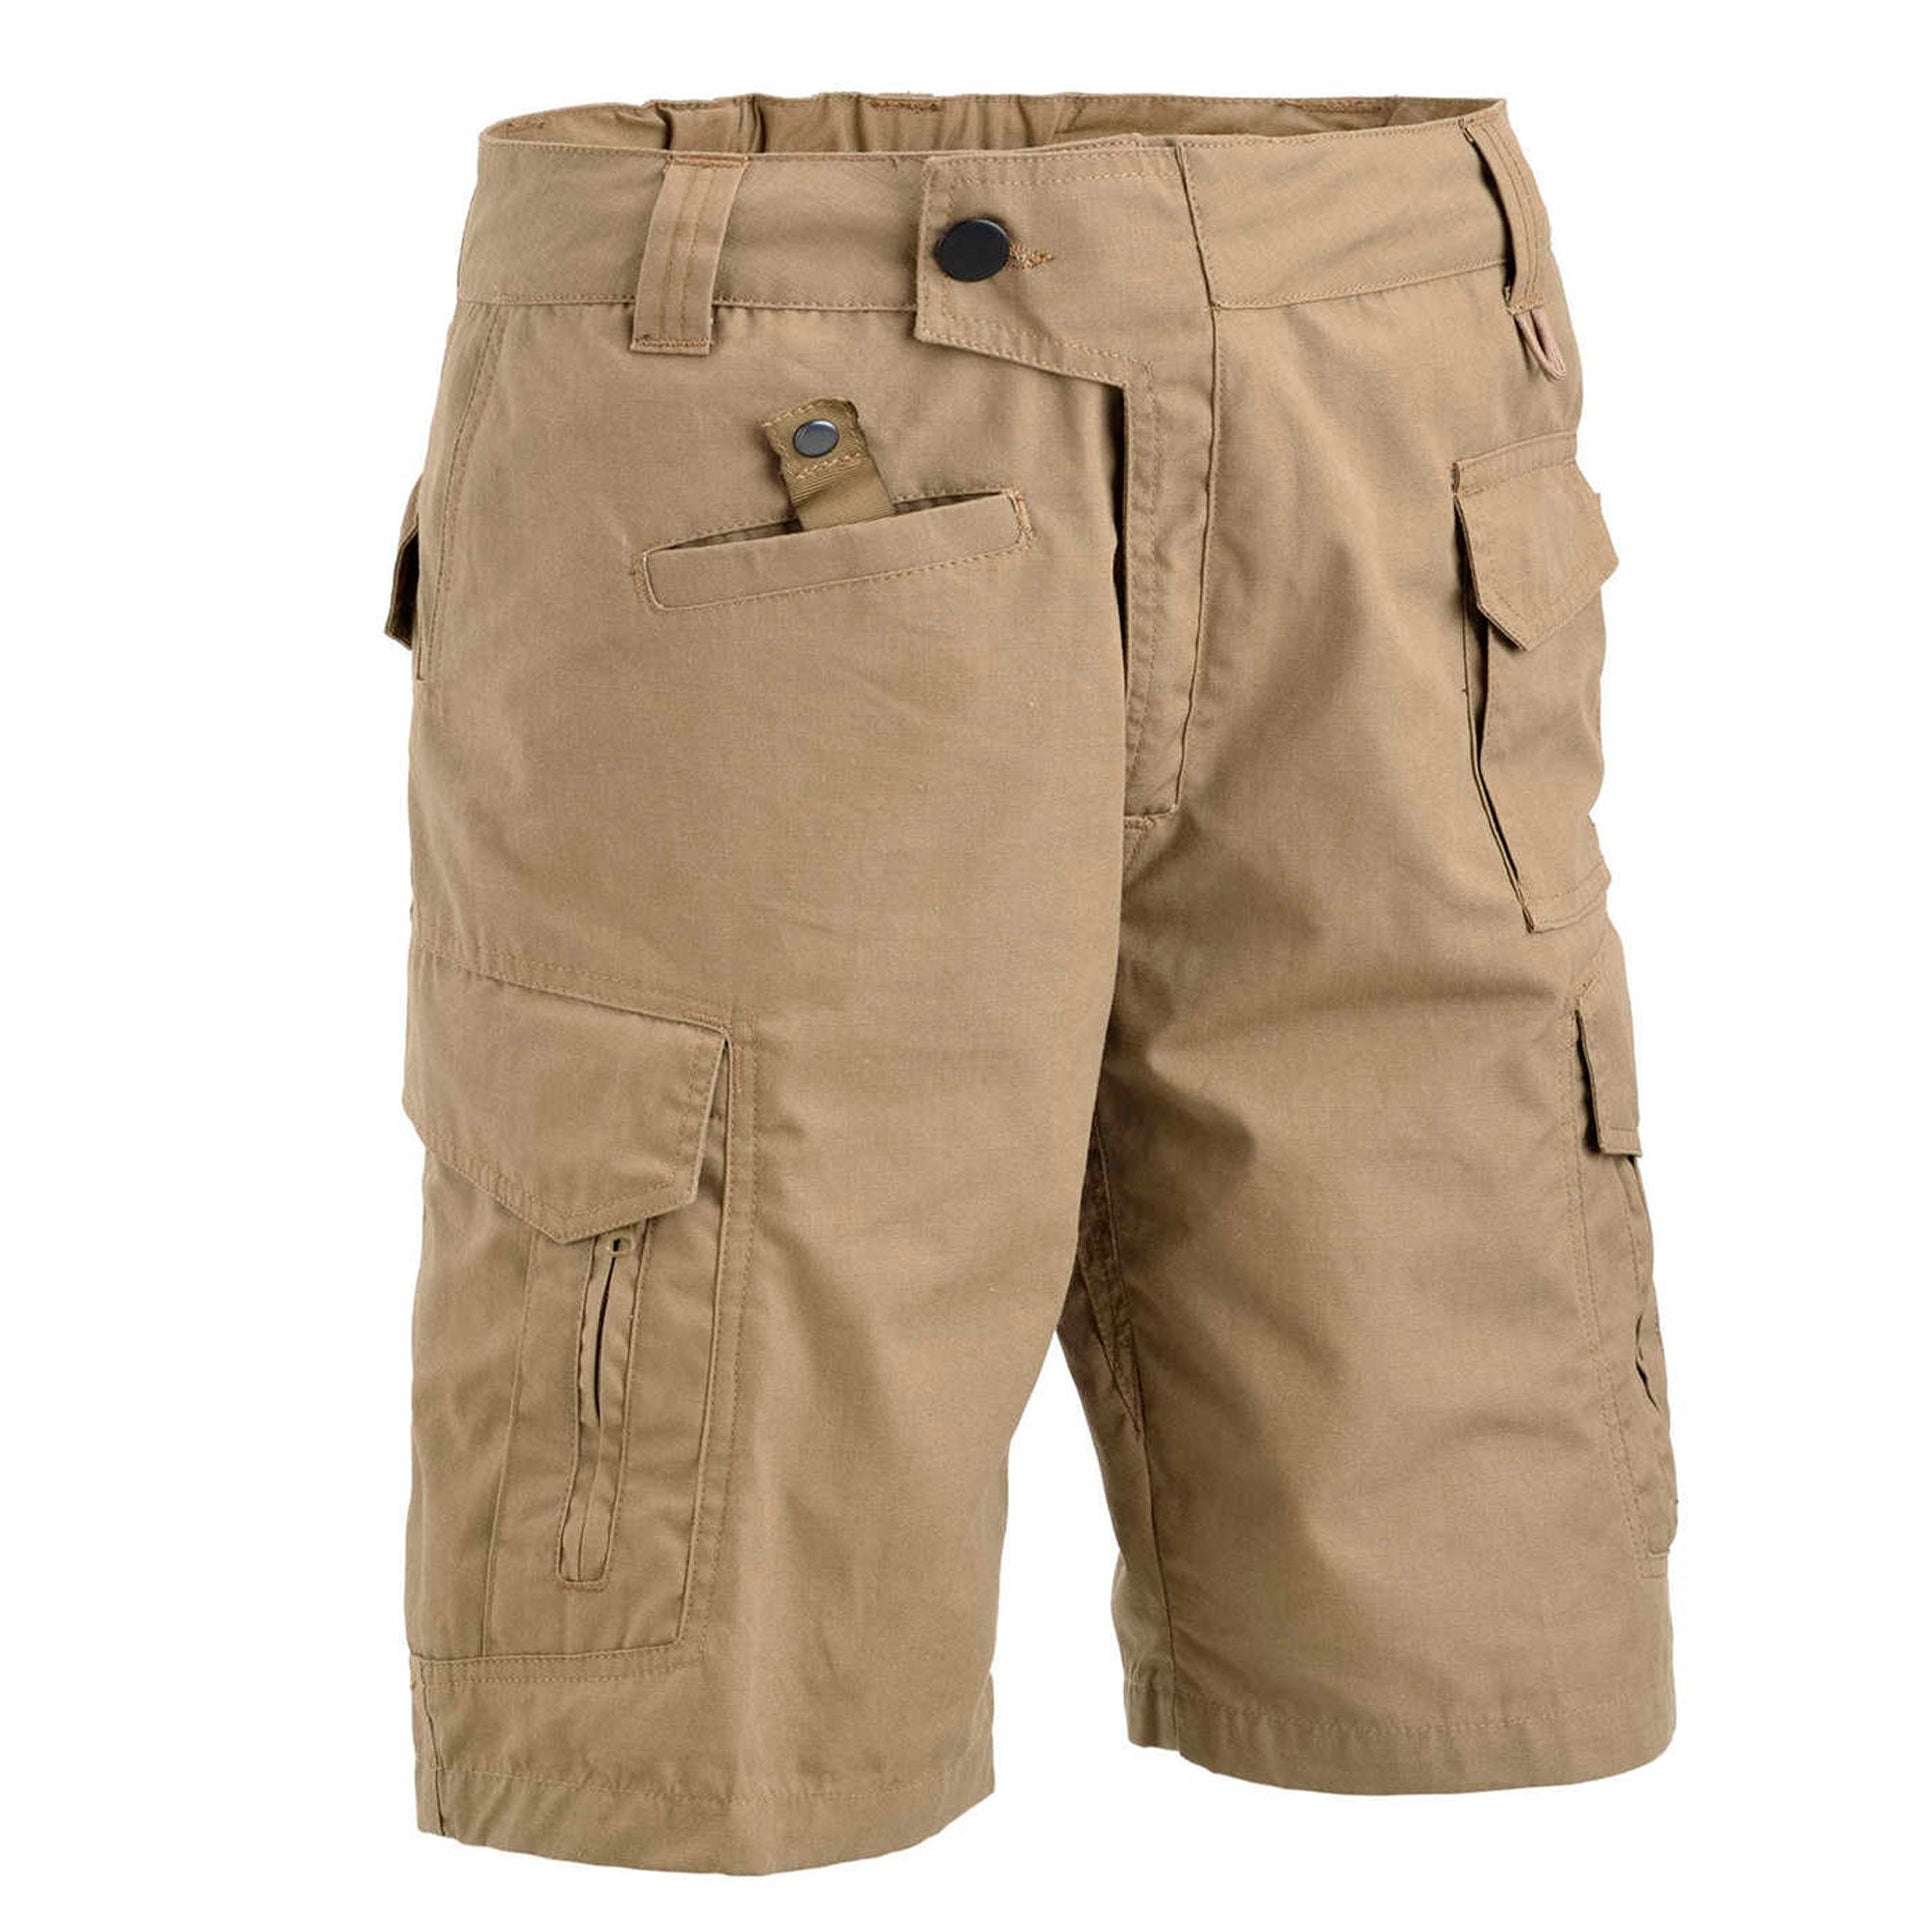 Advanced Tactical Shorts